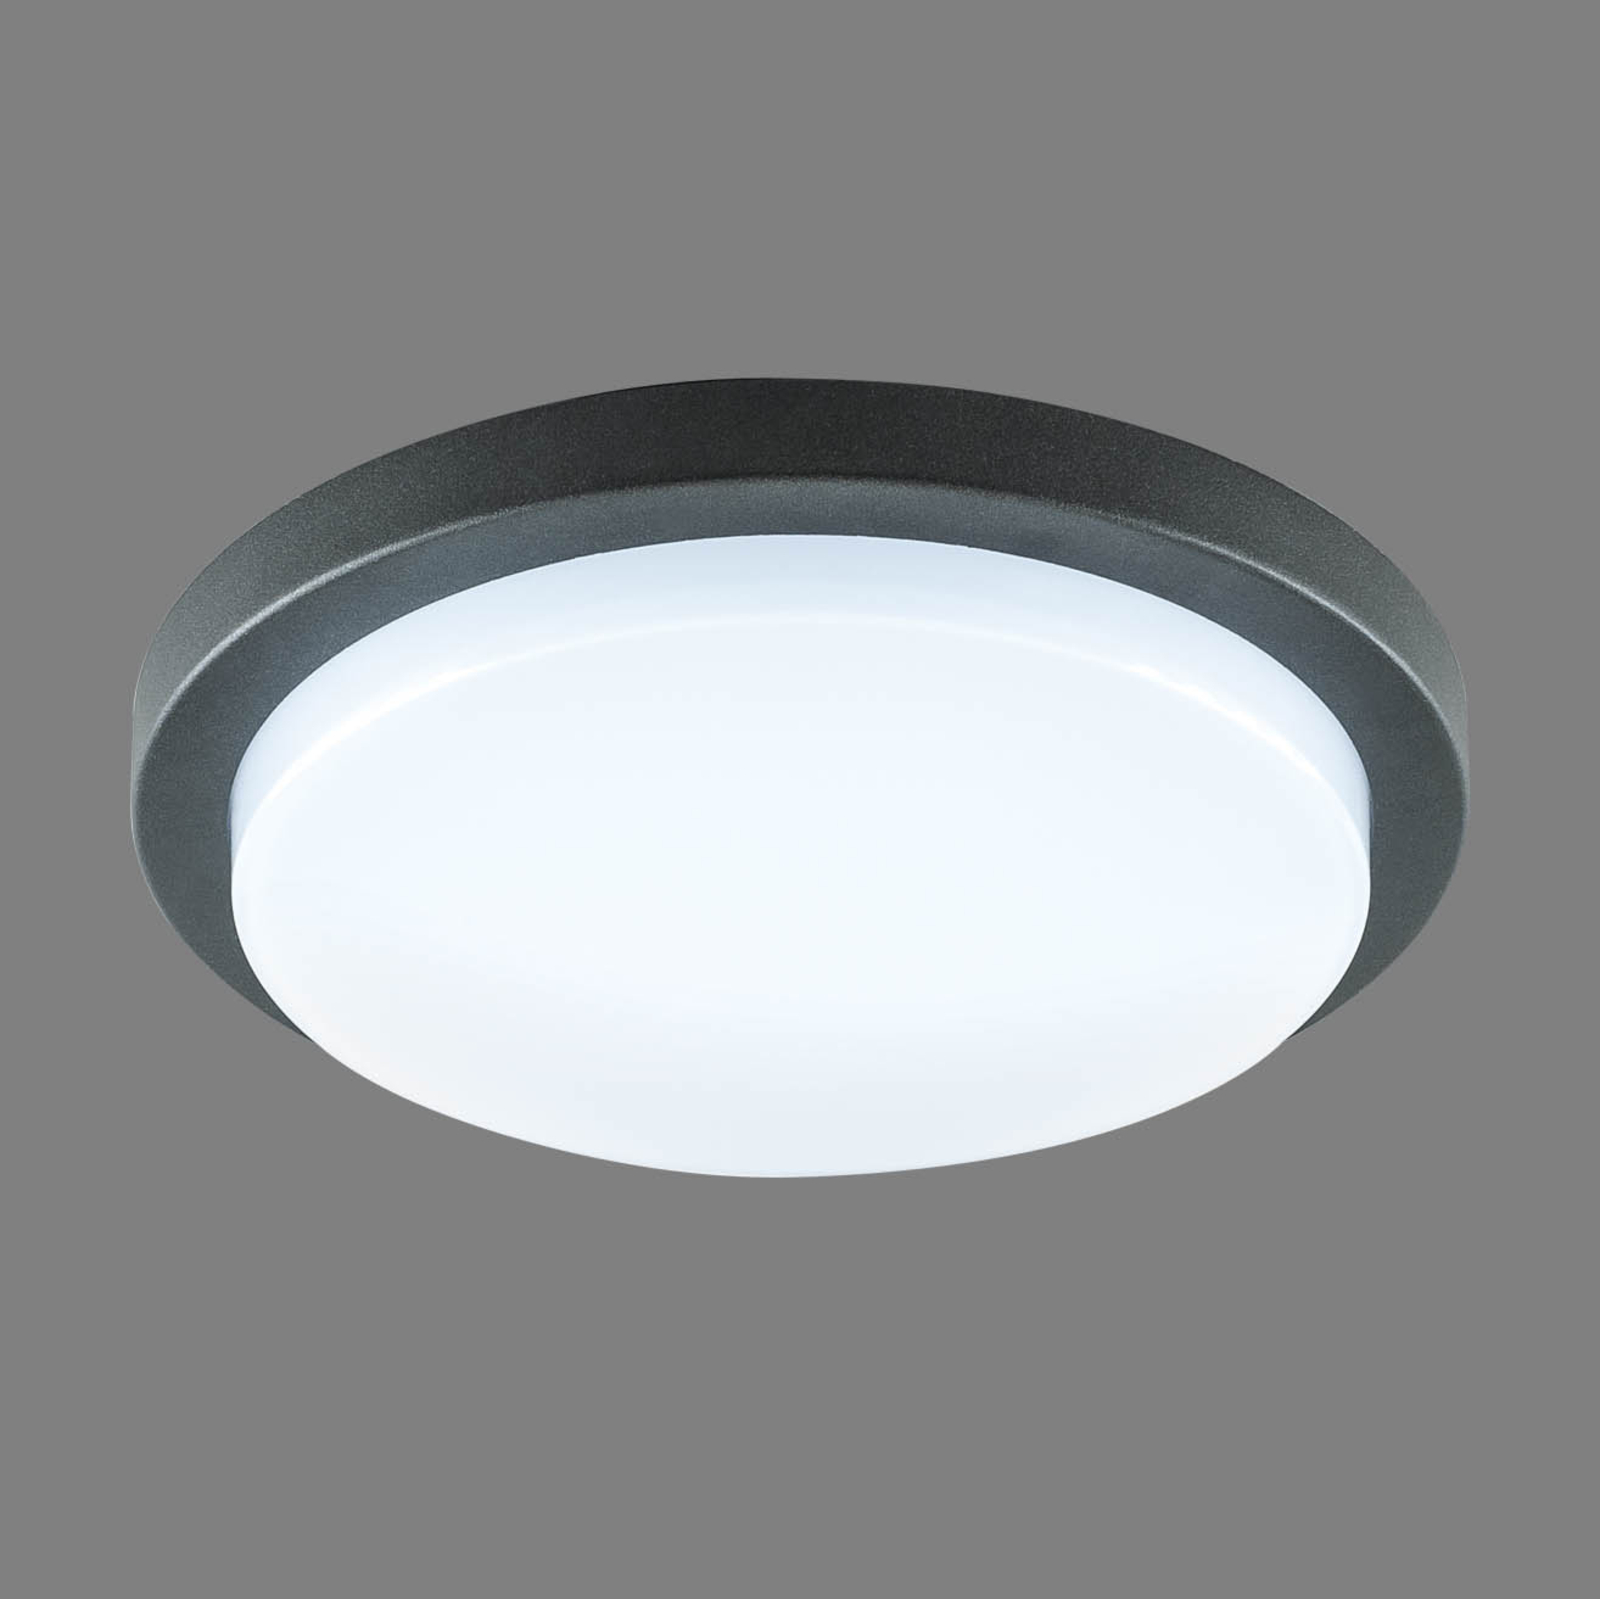 EVN Tectum LED utendørs taklampe, rund, Ø 24,6 cm